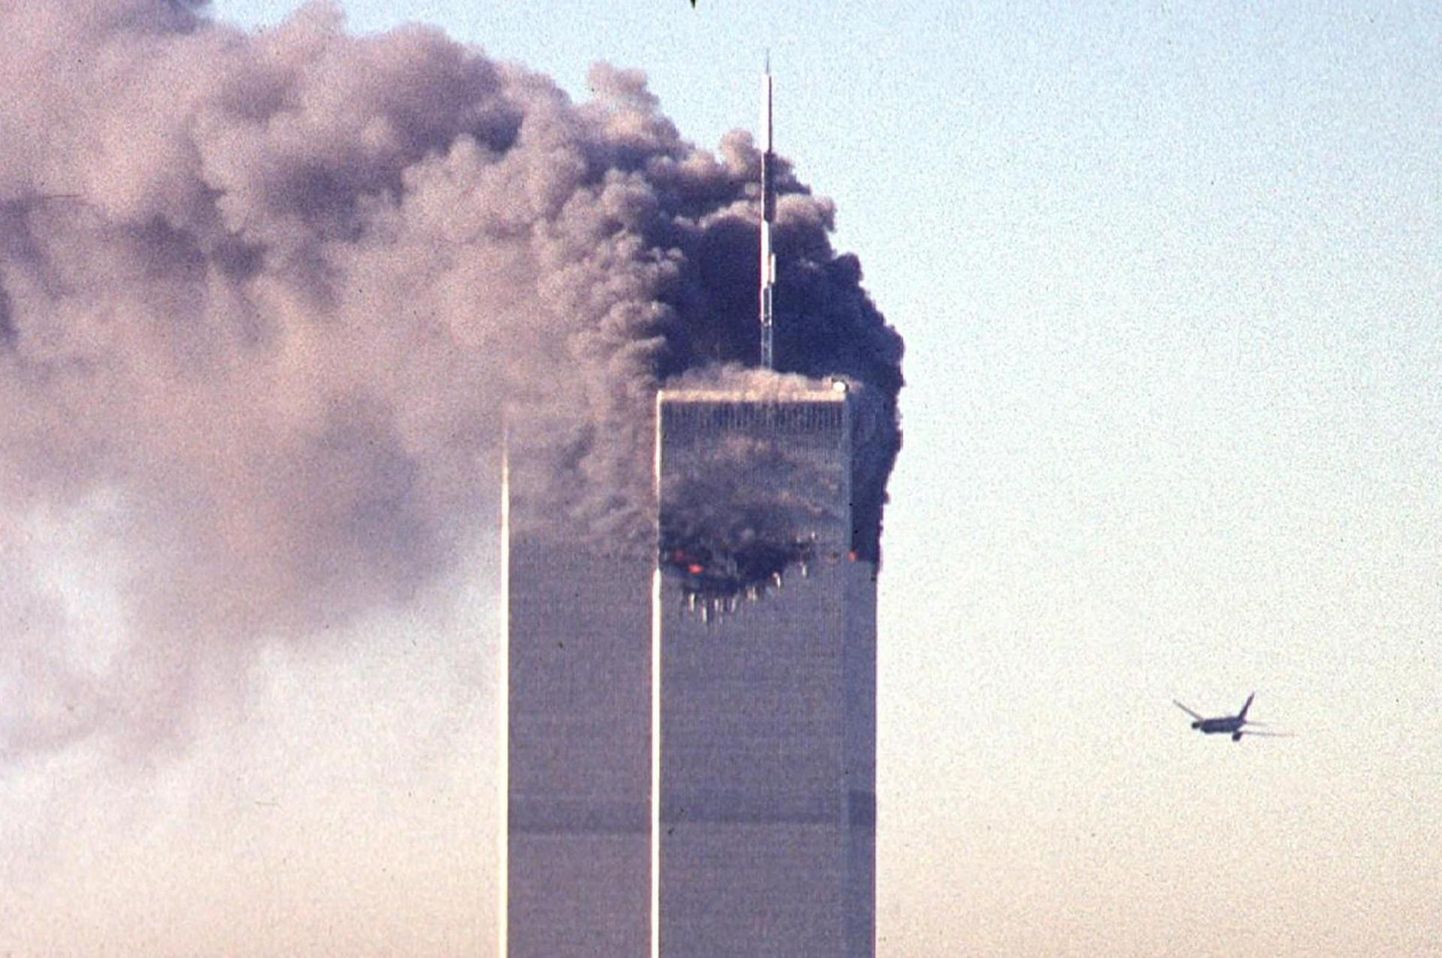 Täna möödub 20 aastat terrorirünnakust, kus kaaperdatud reisilennukid sööstsid New Yorgis Maailma Kaubanduskeskuse kaksiktornidesse.